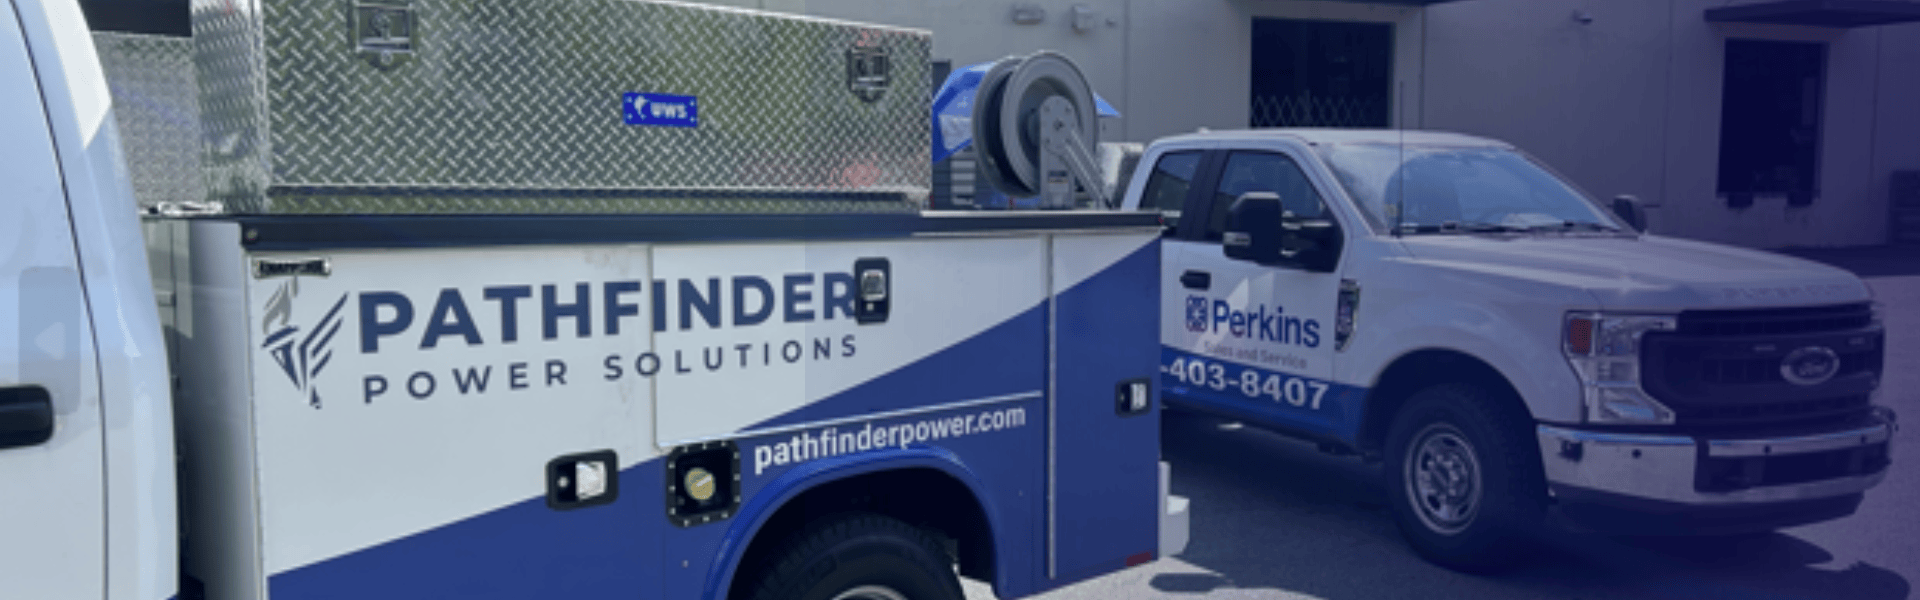 Pathfinder truck